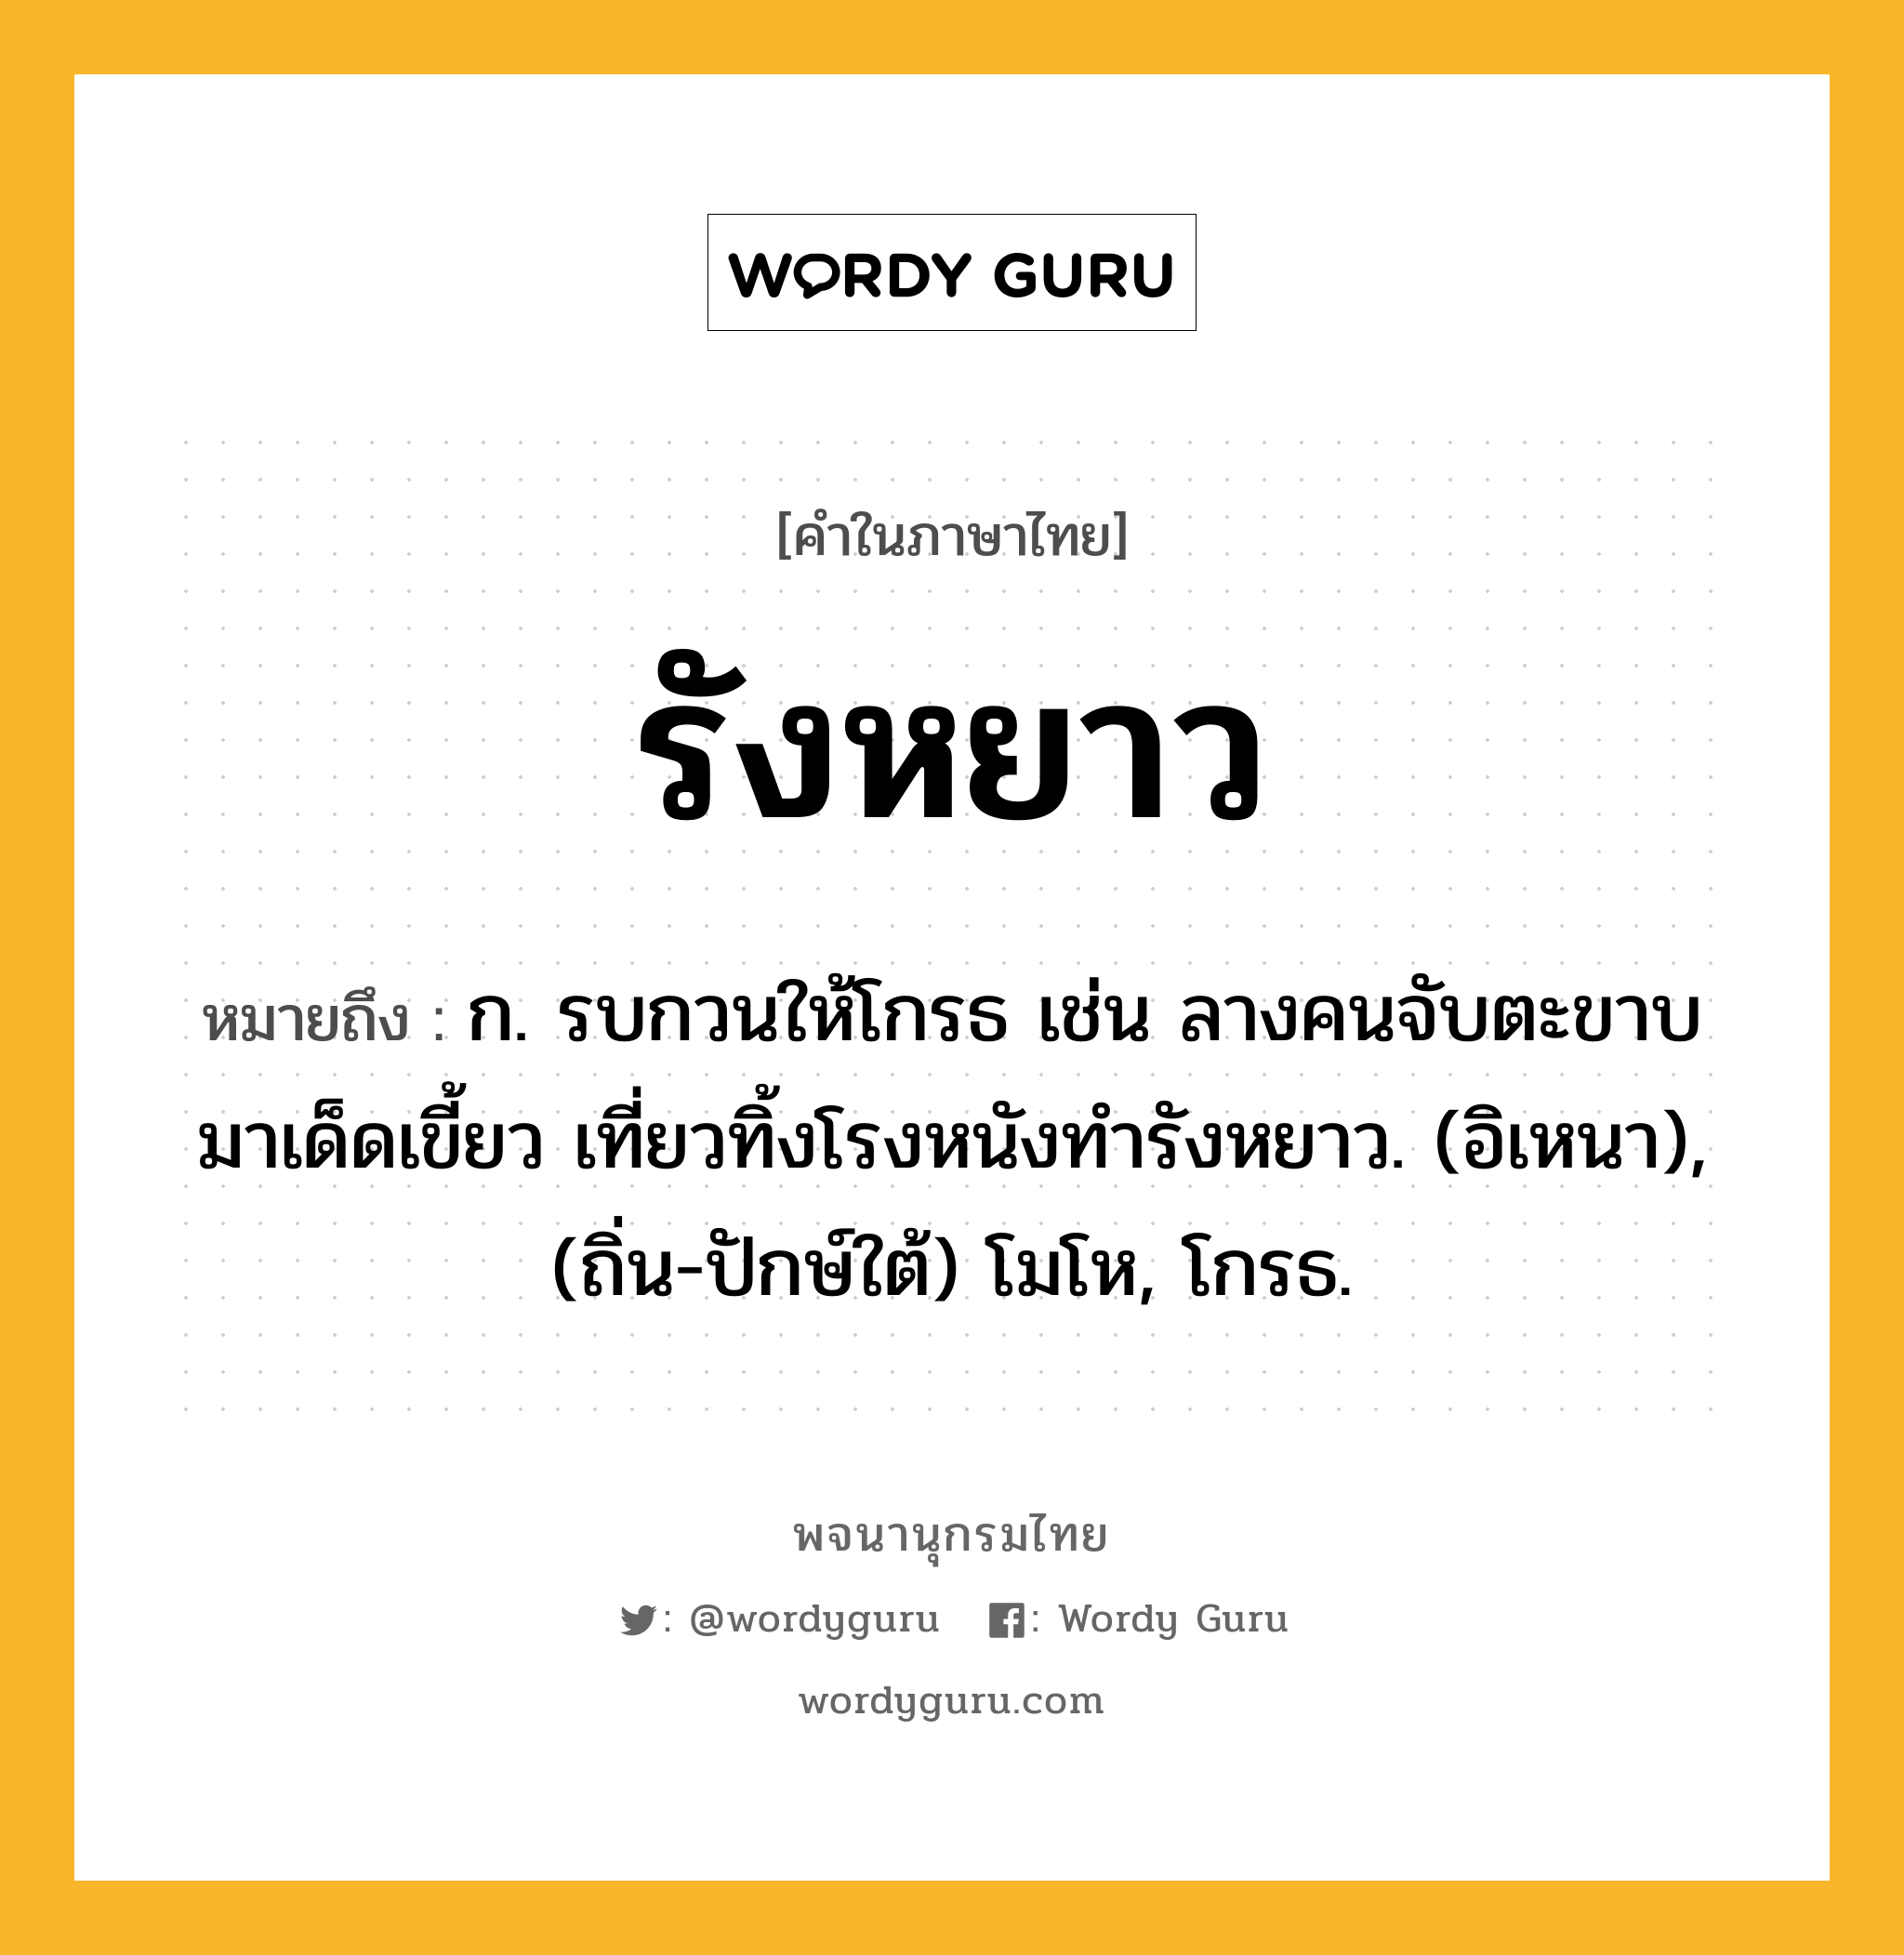 รังหยาว หมายถึงอะไร?, คำในภาษาไทย รังหยาว หมายถึง ก. รบกวนให้โกรธ เช่น ลางคนจับตะขาบมาเด็ดเขี้ยว เที่ยวทิ้งโรงหนังทํารังหยาว. (อิเหนา), (ถิ่น-ปักษ์ใต้) โมโห, โกรธ.